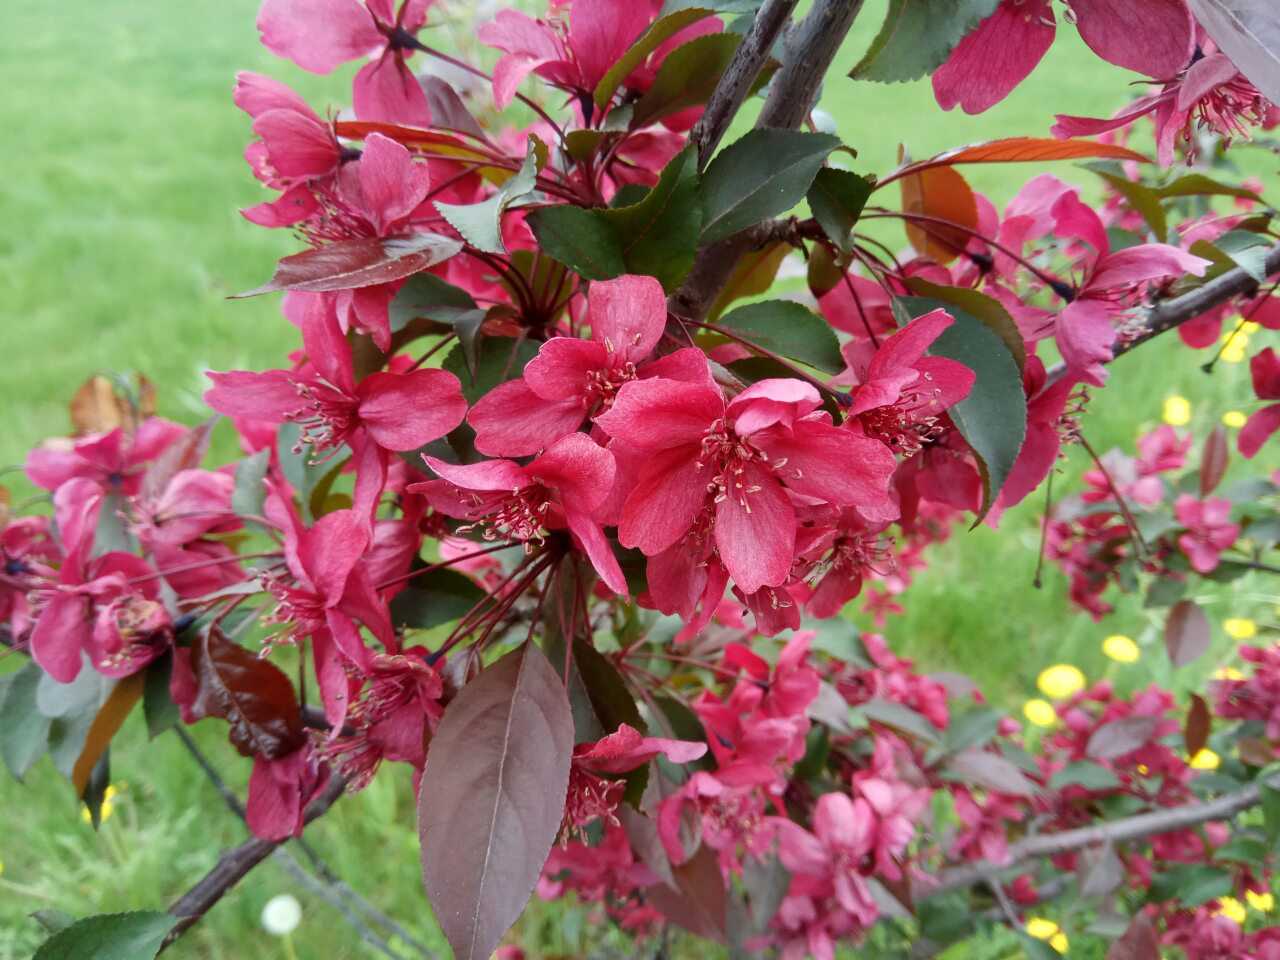 Декоративная яблоня недзвецкого – прекрасное украшение для сада